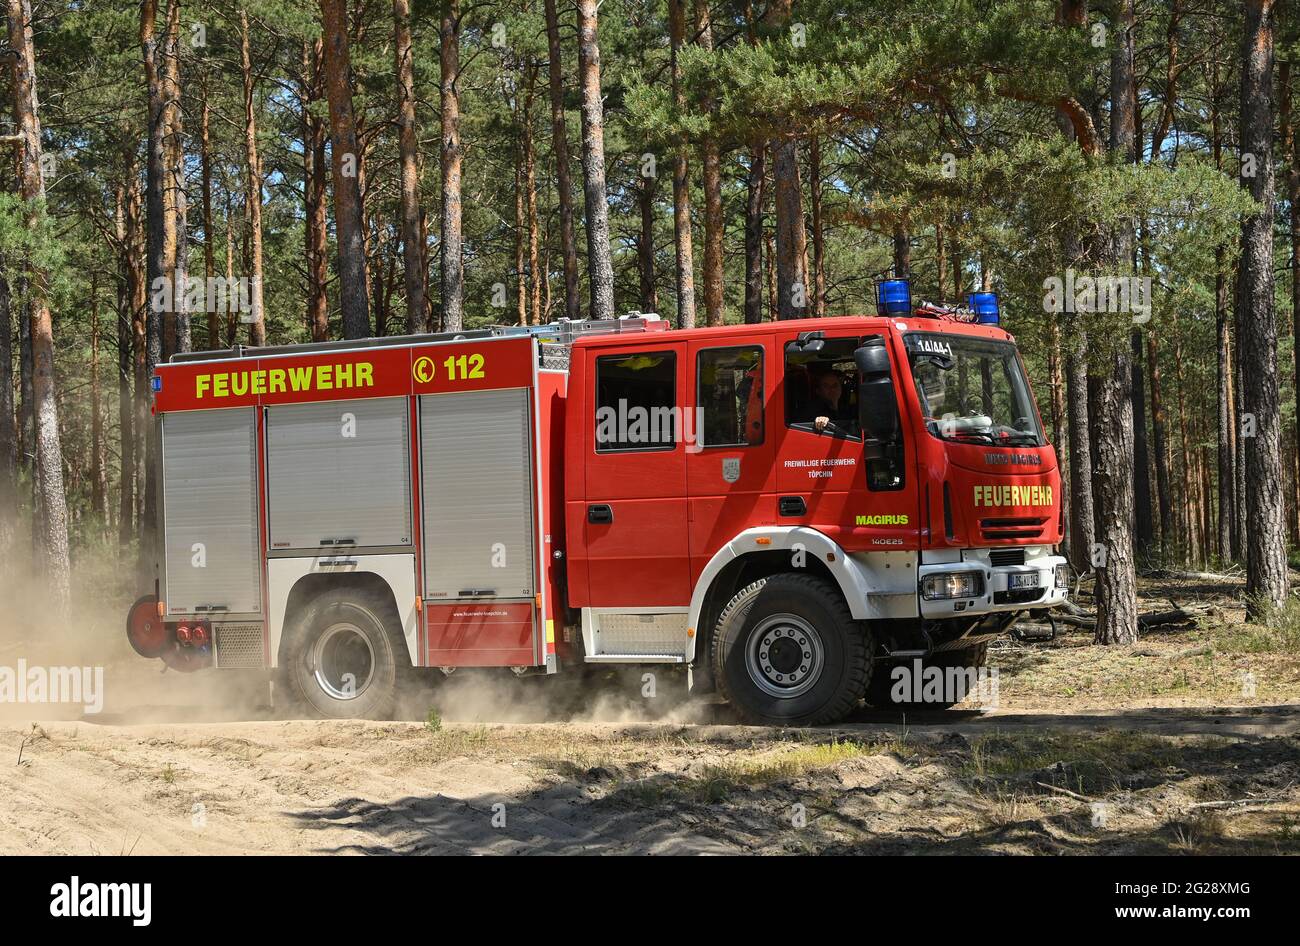 09 giugno 2021, Brandeburgo, Wünsdorf: Un incendio del dipartimento dei vigili del fuoco sta per arrivare a un incendio in una pineta nei pressi di Wünsdorf. Con l'aumento delle temperature, il pericolo di incendi boschivi è aumentato nel Brandeburgo. Attualmente, il livello 4 di rischio di incendi boschivi è in vigore in tutto lo stato del Brandeburgo. Due centri di vigili del fuoco a Wünsdorf (Teltow-Fläming) e Eberswalde (Barnim) monitorano gli eventi nello stato. Dalla fase 3 in poi, sono presidiati. Secondo il Ministero dell'ambiente, l'anno scorso sono stati 299 incendi boschivi nel Brandeburgo su 118.5 ettari di terreno. Foto: Patrick Pleul Foto Stock